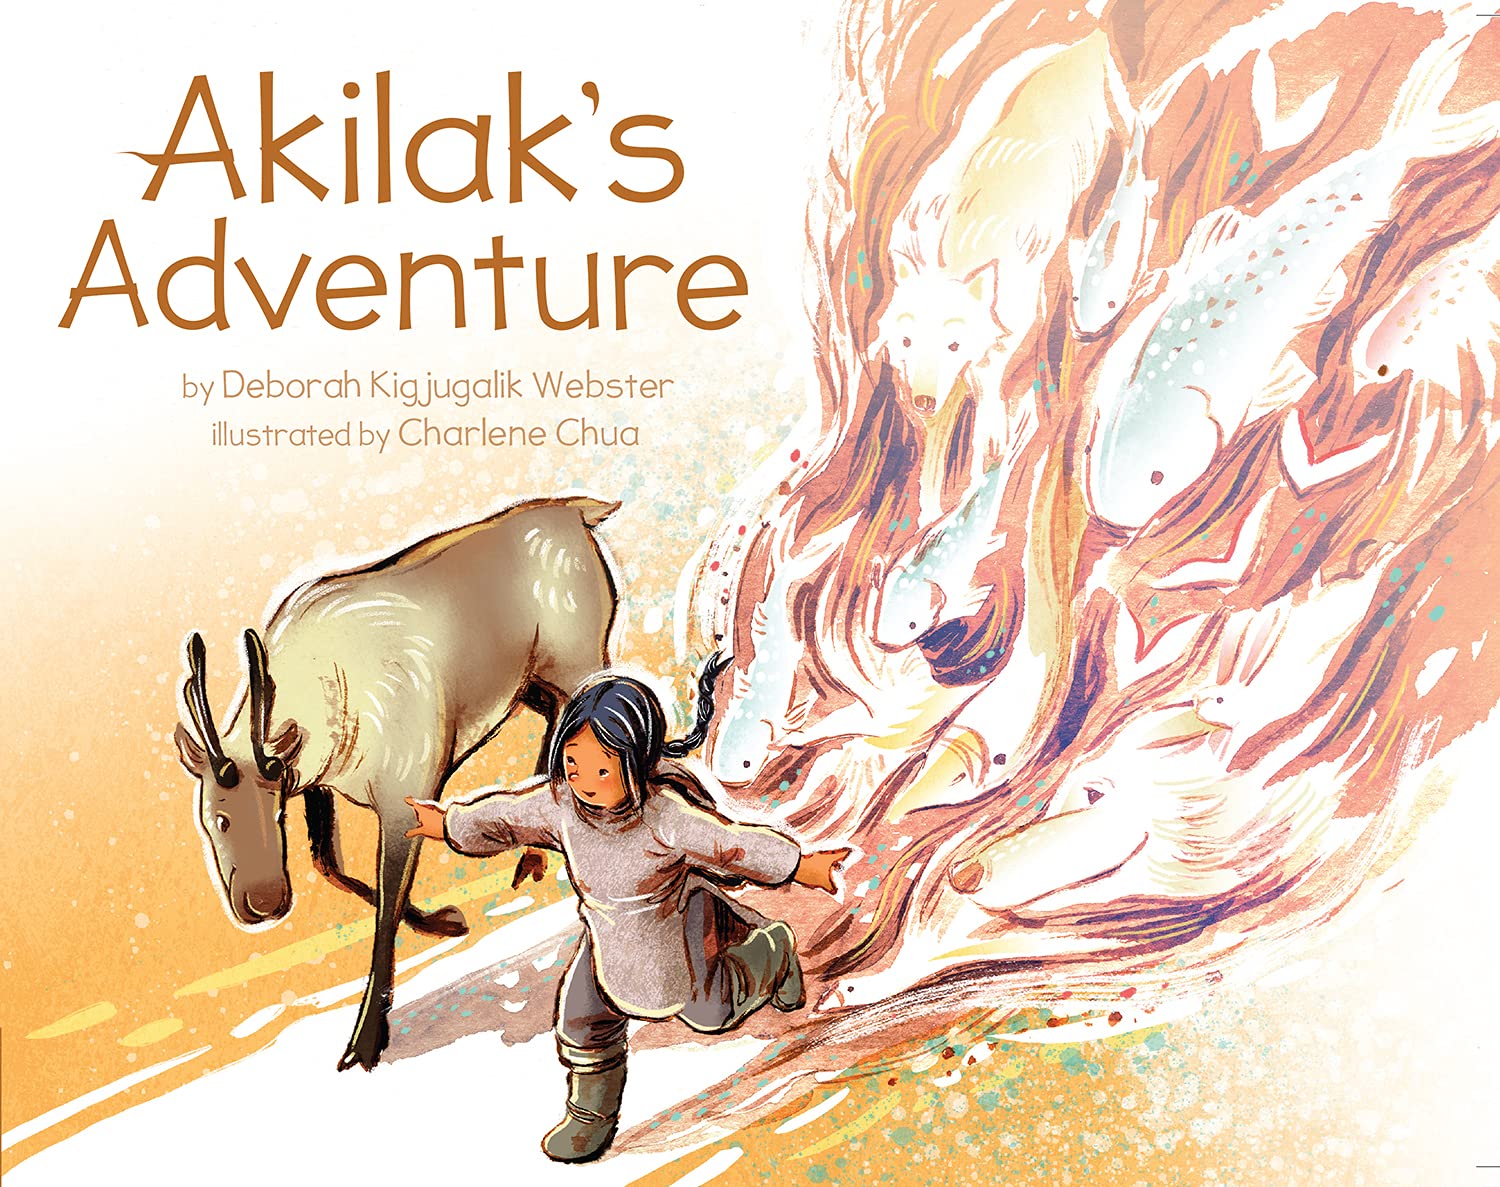 Akilaks Adventure